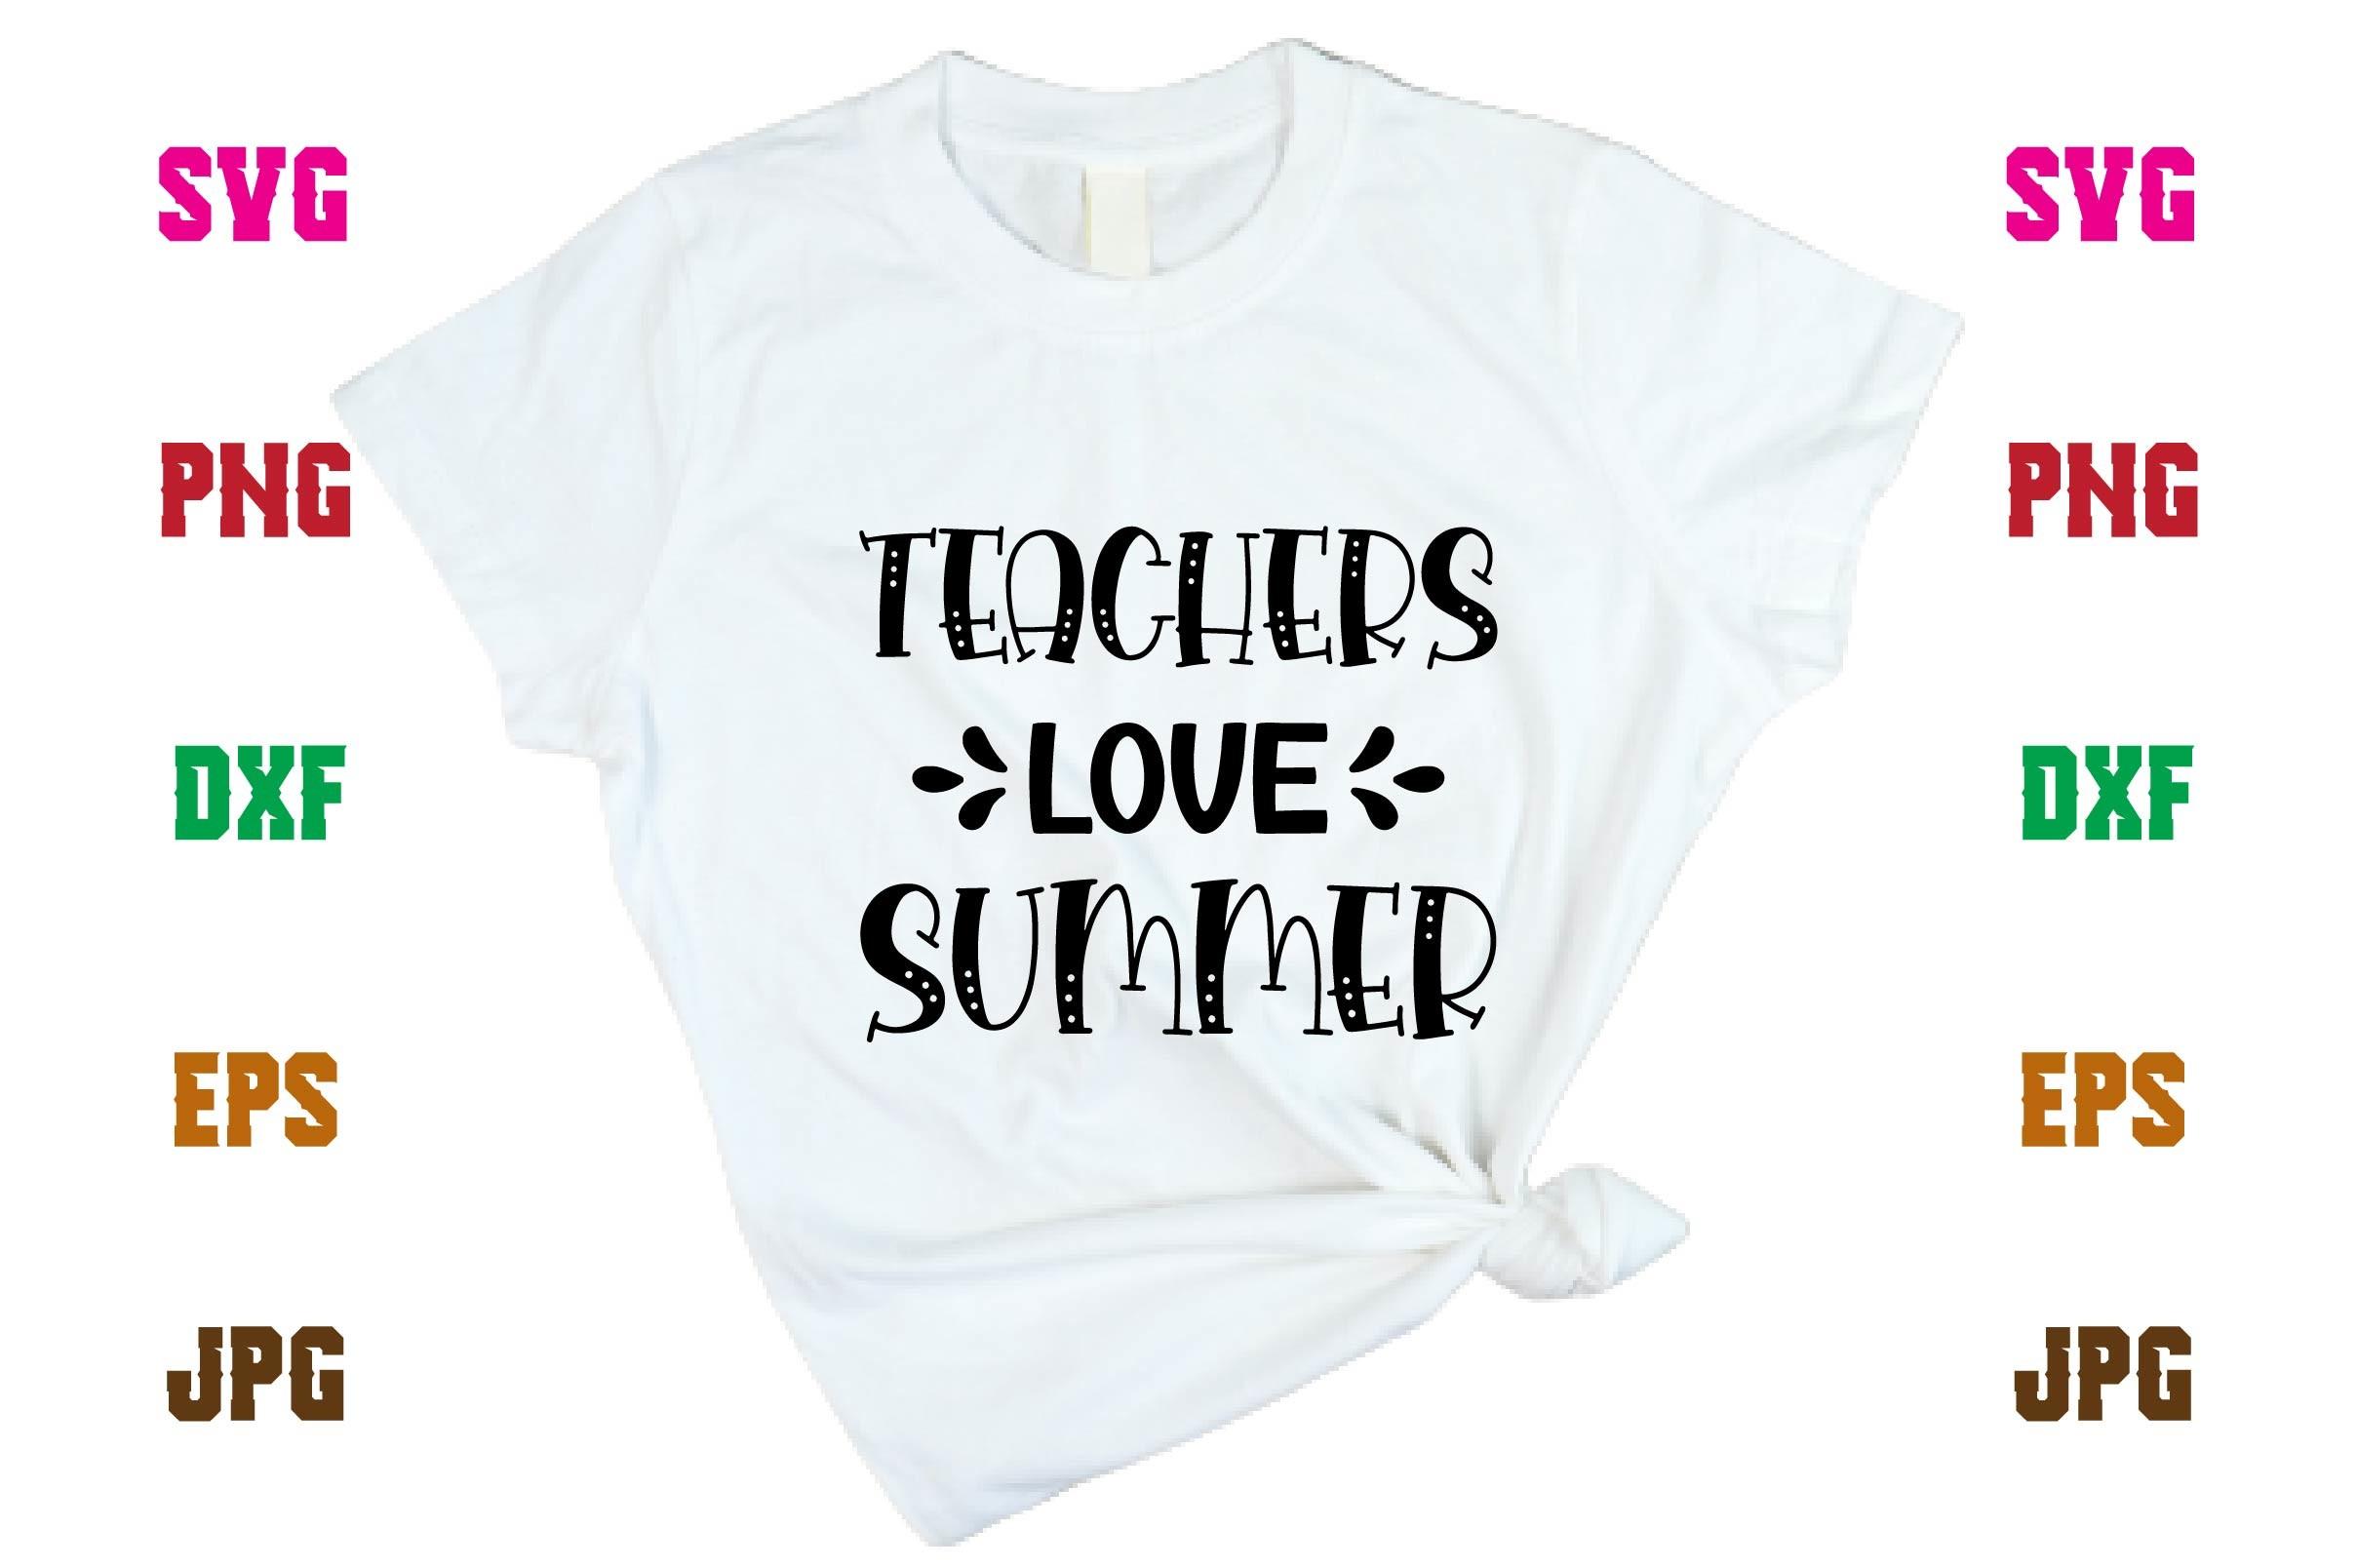 Teachers Love Summer